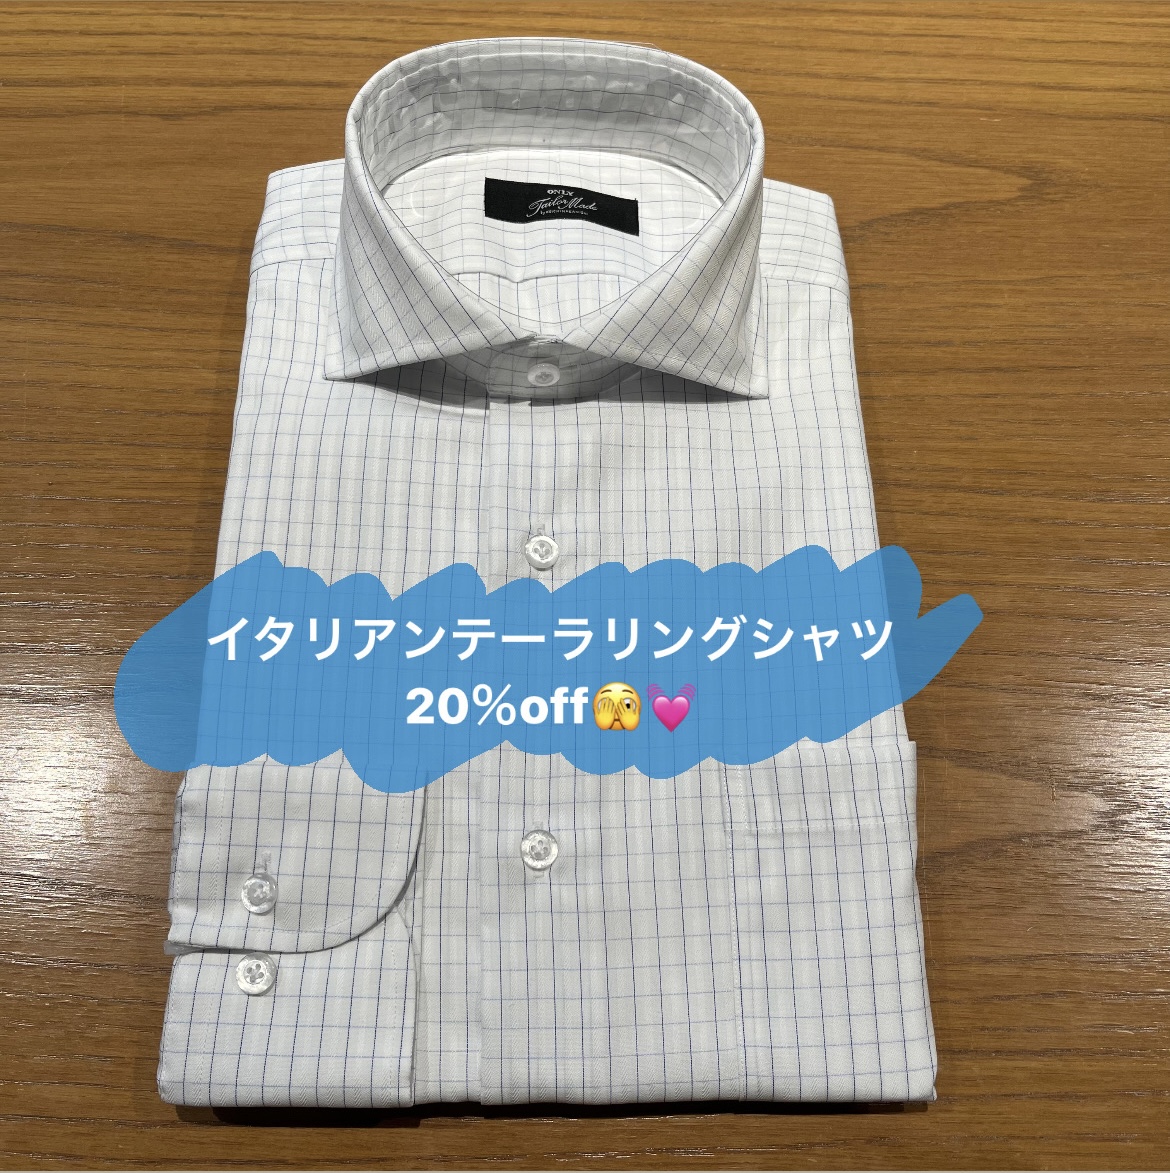 【オーダシャツ試すなら今がチャンス😁 】ONLY PREMIO TOKYO有楽町店